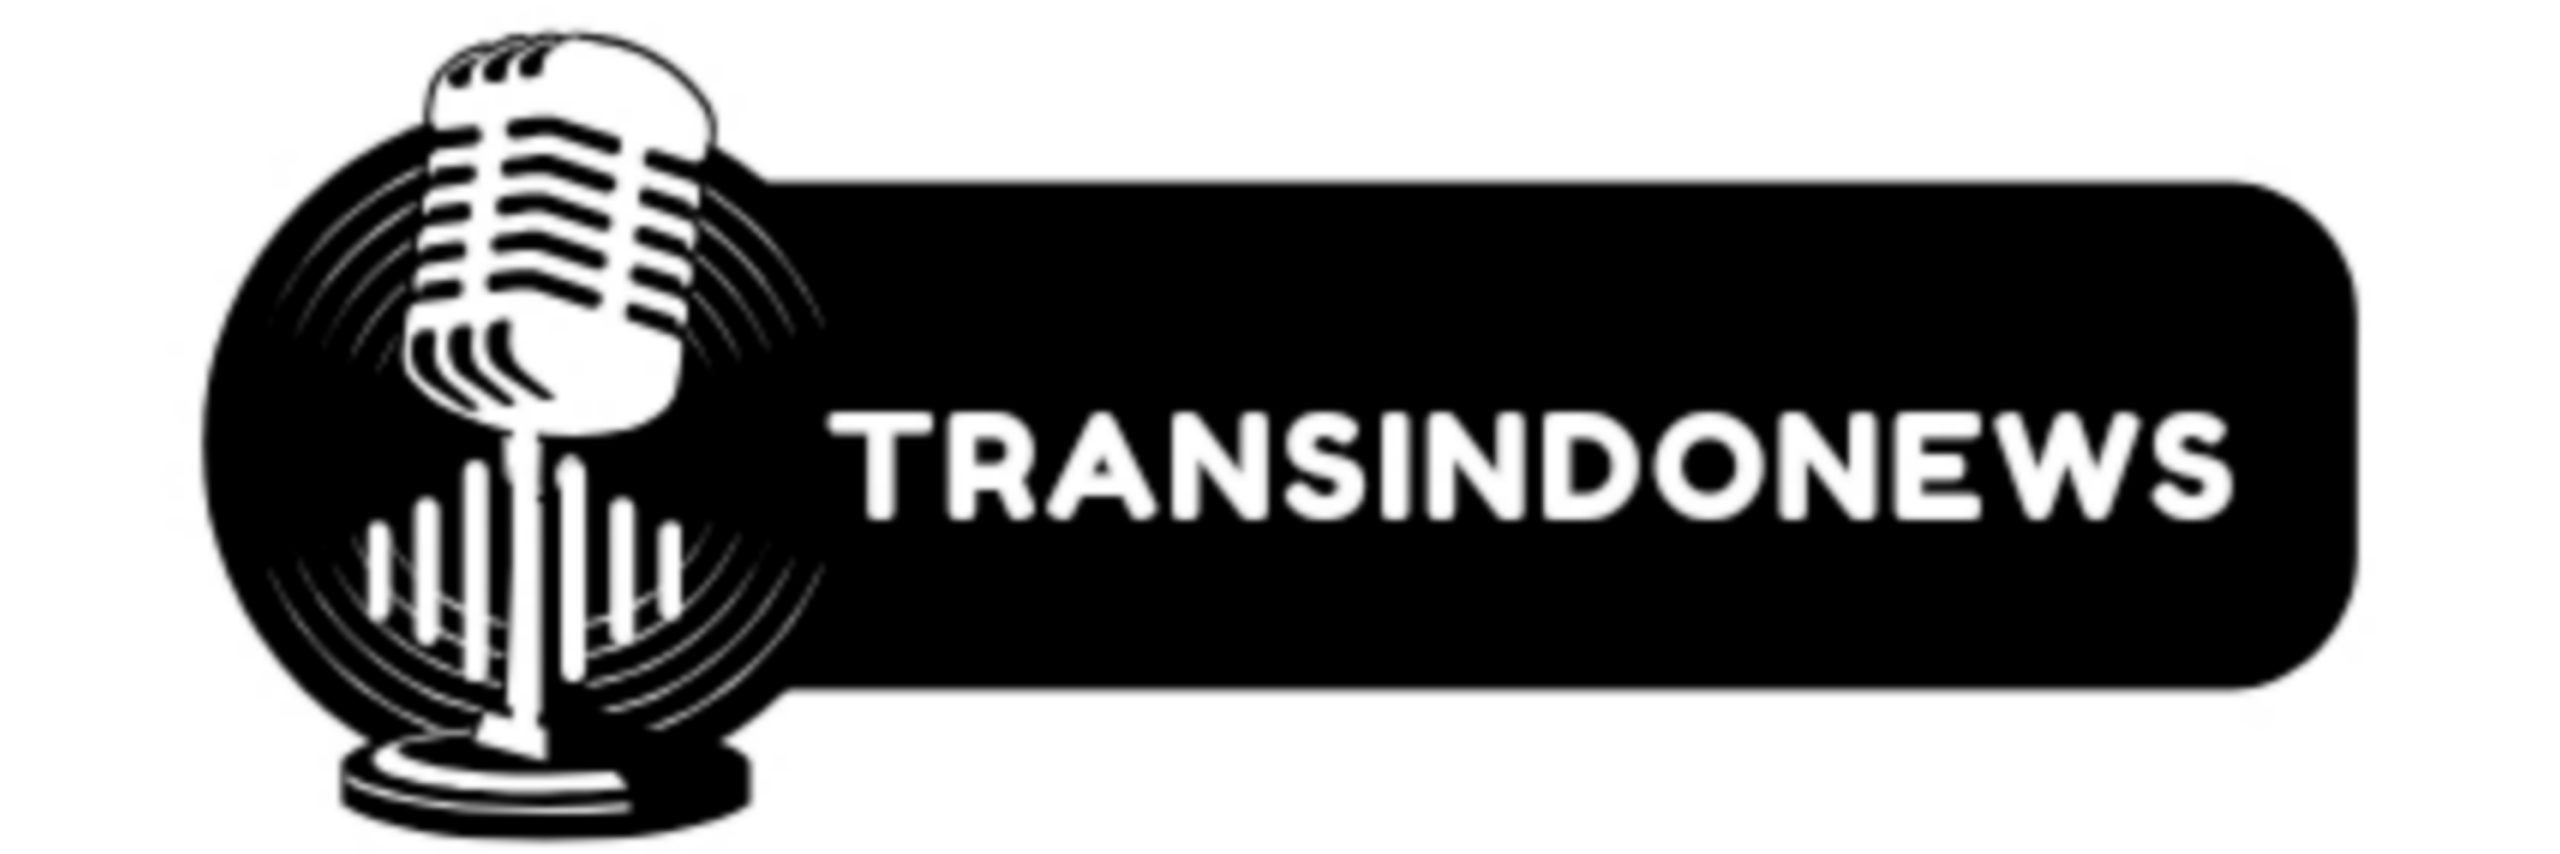 TransindoNews.com